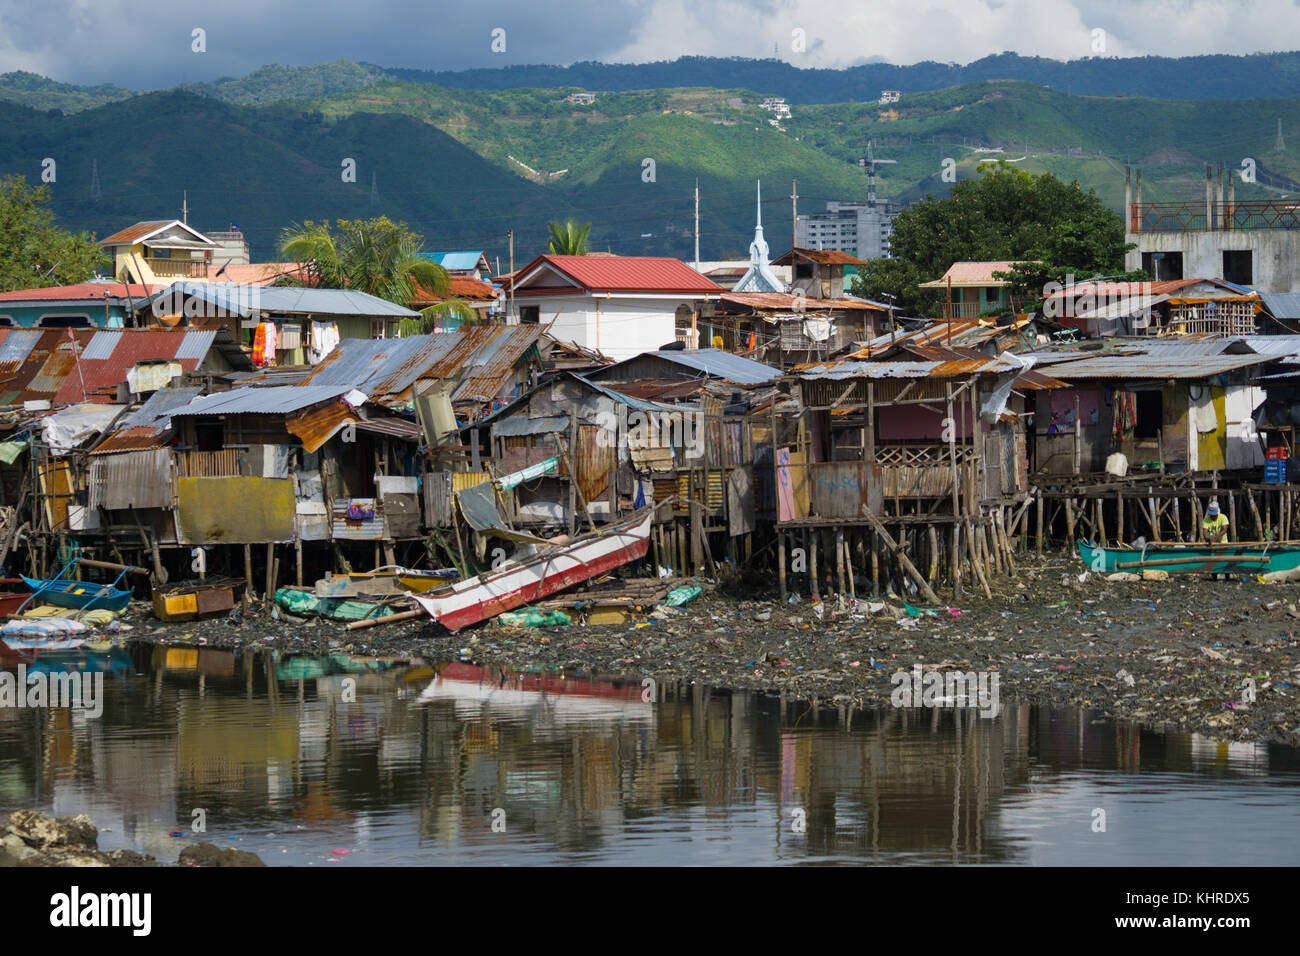 Des bâtiments en matériaux légers sur pilotis en bois abritent la communauté de Badjao à la périphérie de Cebu City, aux Philippines. Banque D'Images